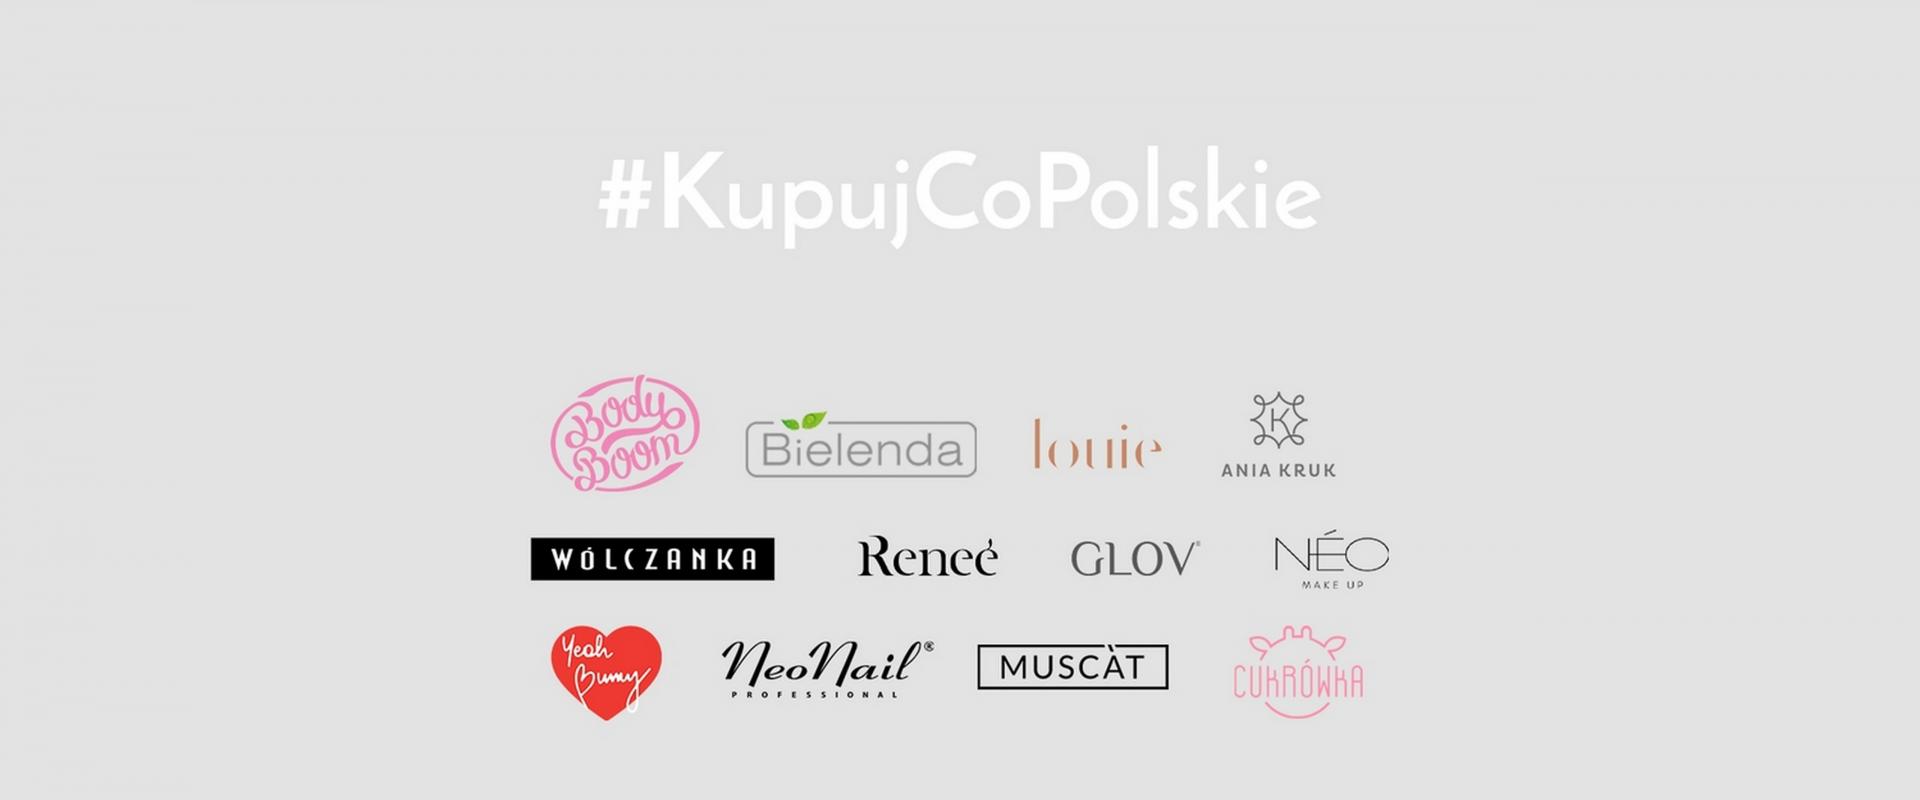 #KupujCoPolskie – polskie marki lifestylowe solidarne w obliczu epidemii